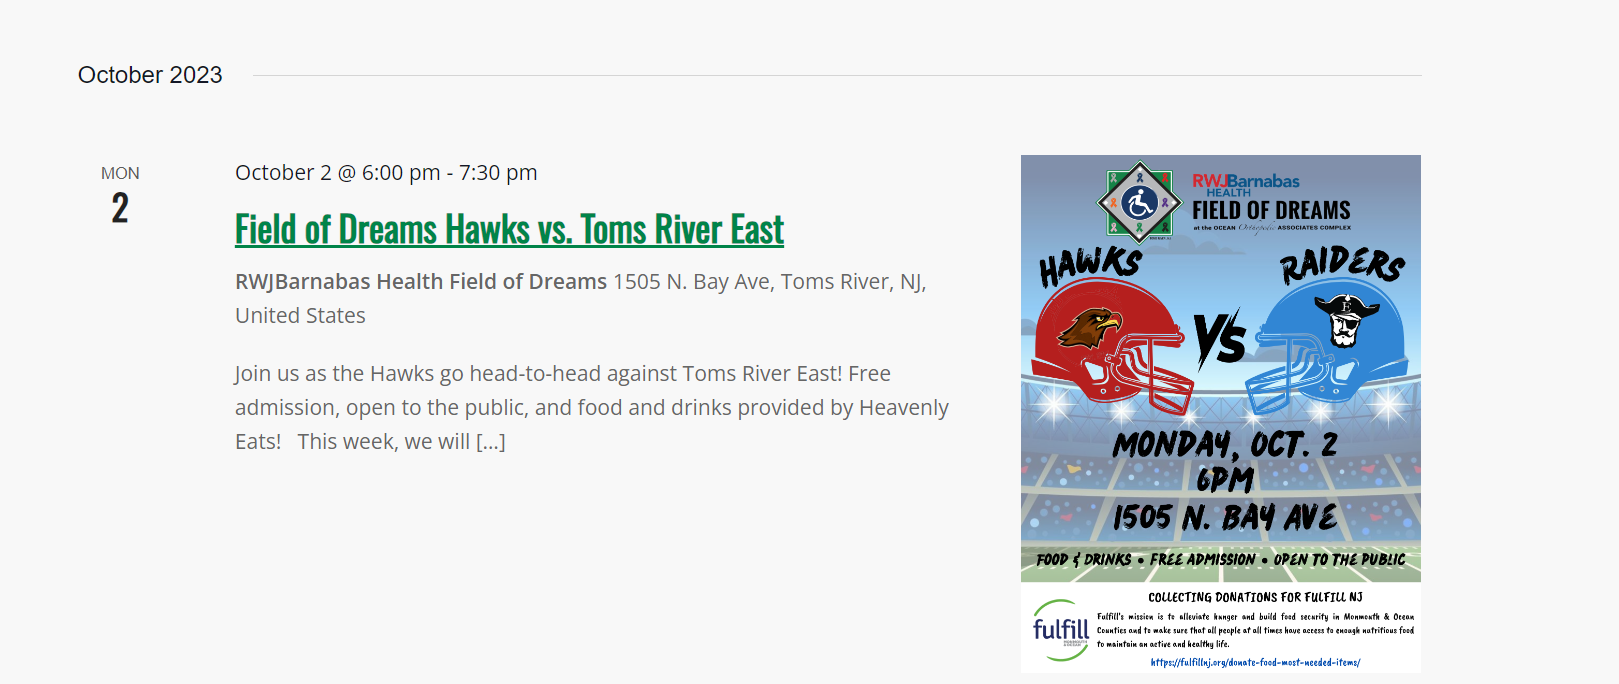 Field of Dreams Hawks vs. Toms River East